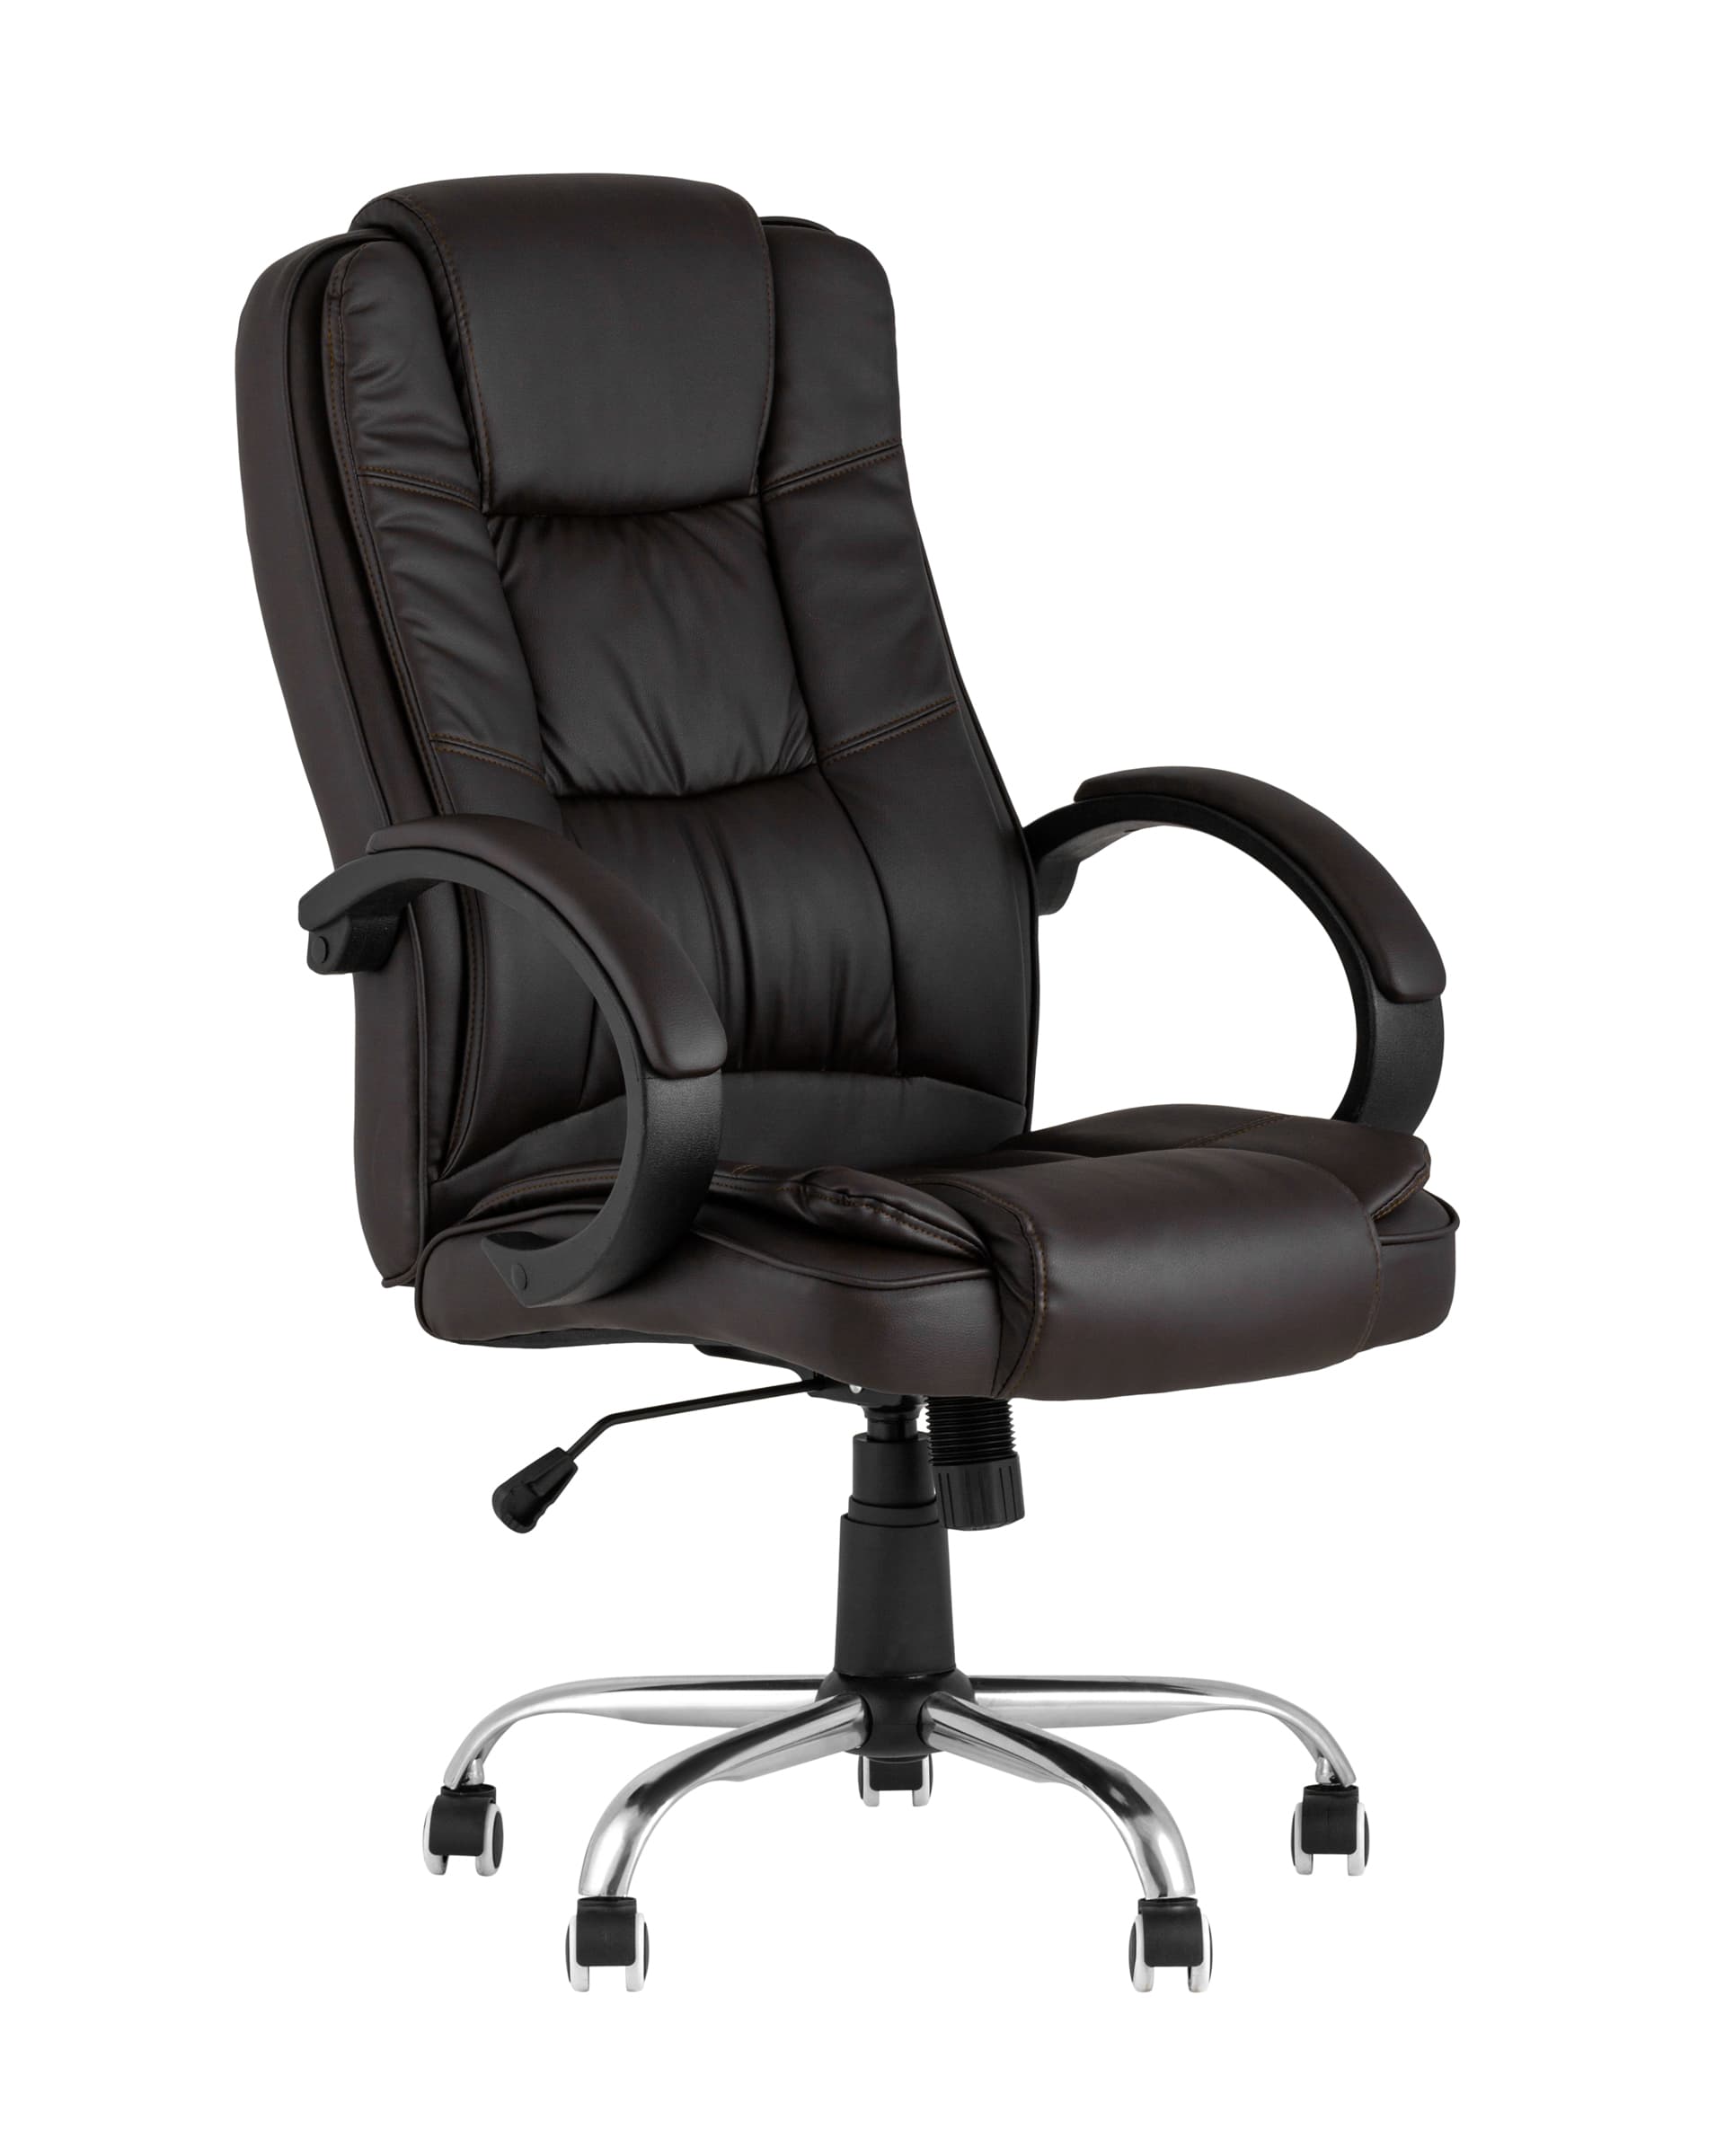 Компьютерное кресло TopChairs Atlant офисное коричневое обивка экокожа, механизм качания Top Gun